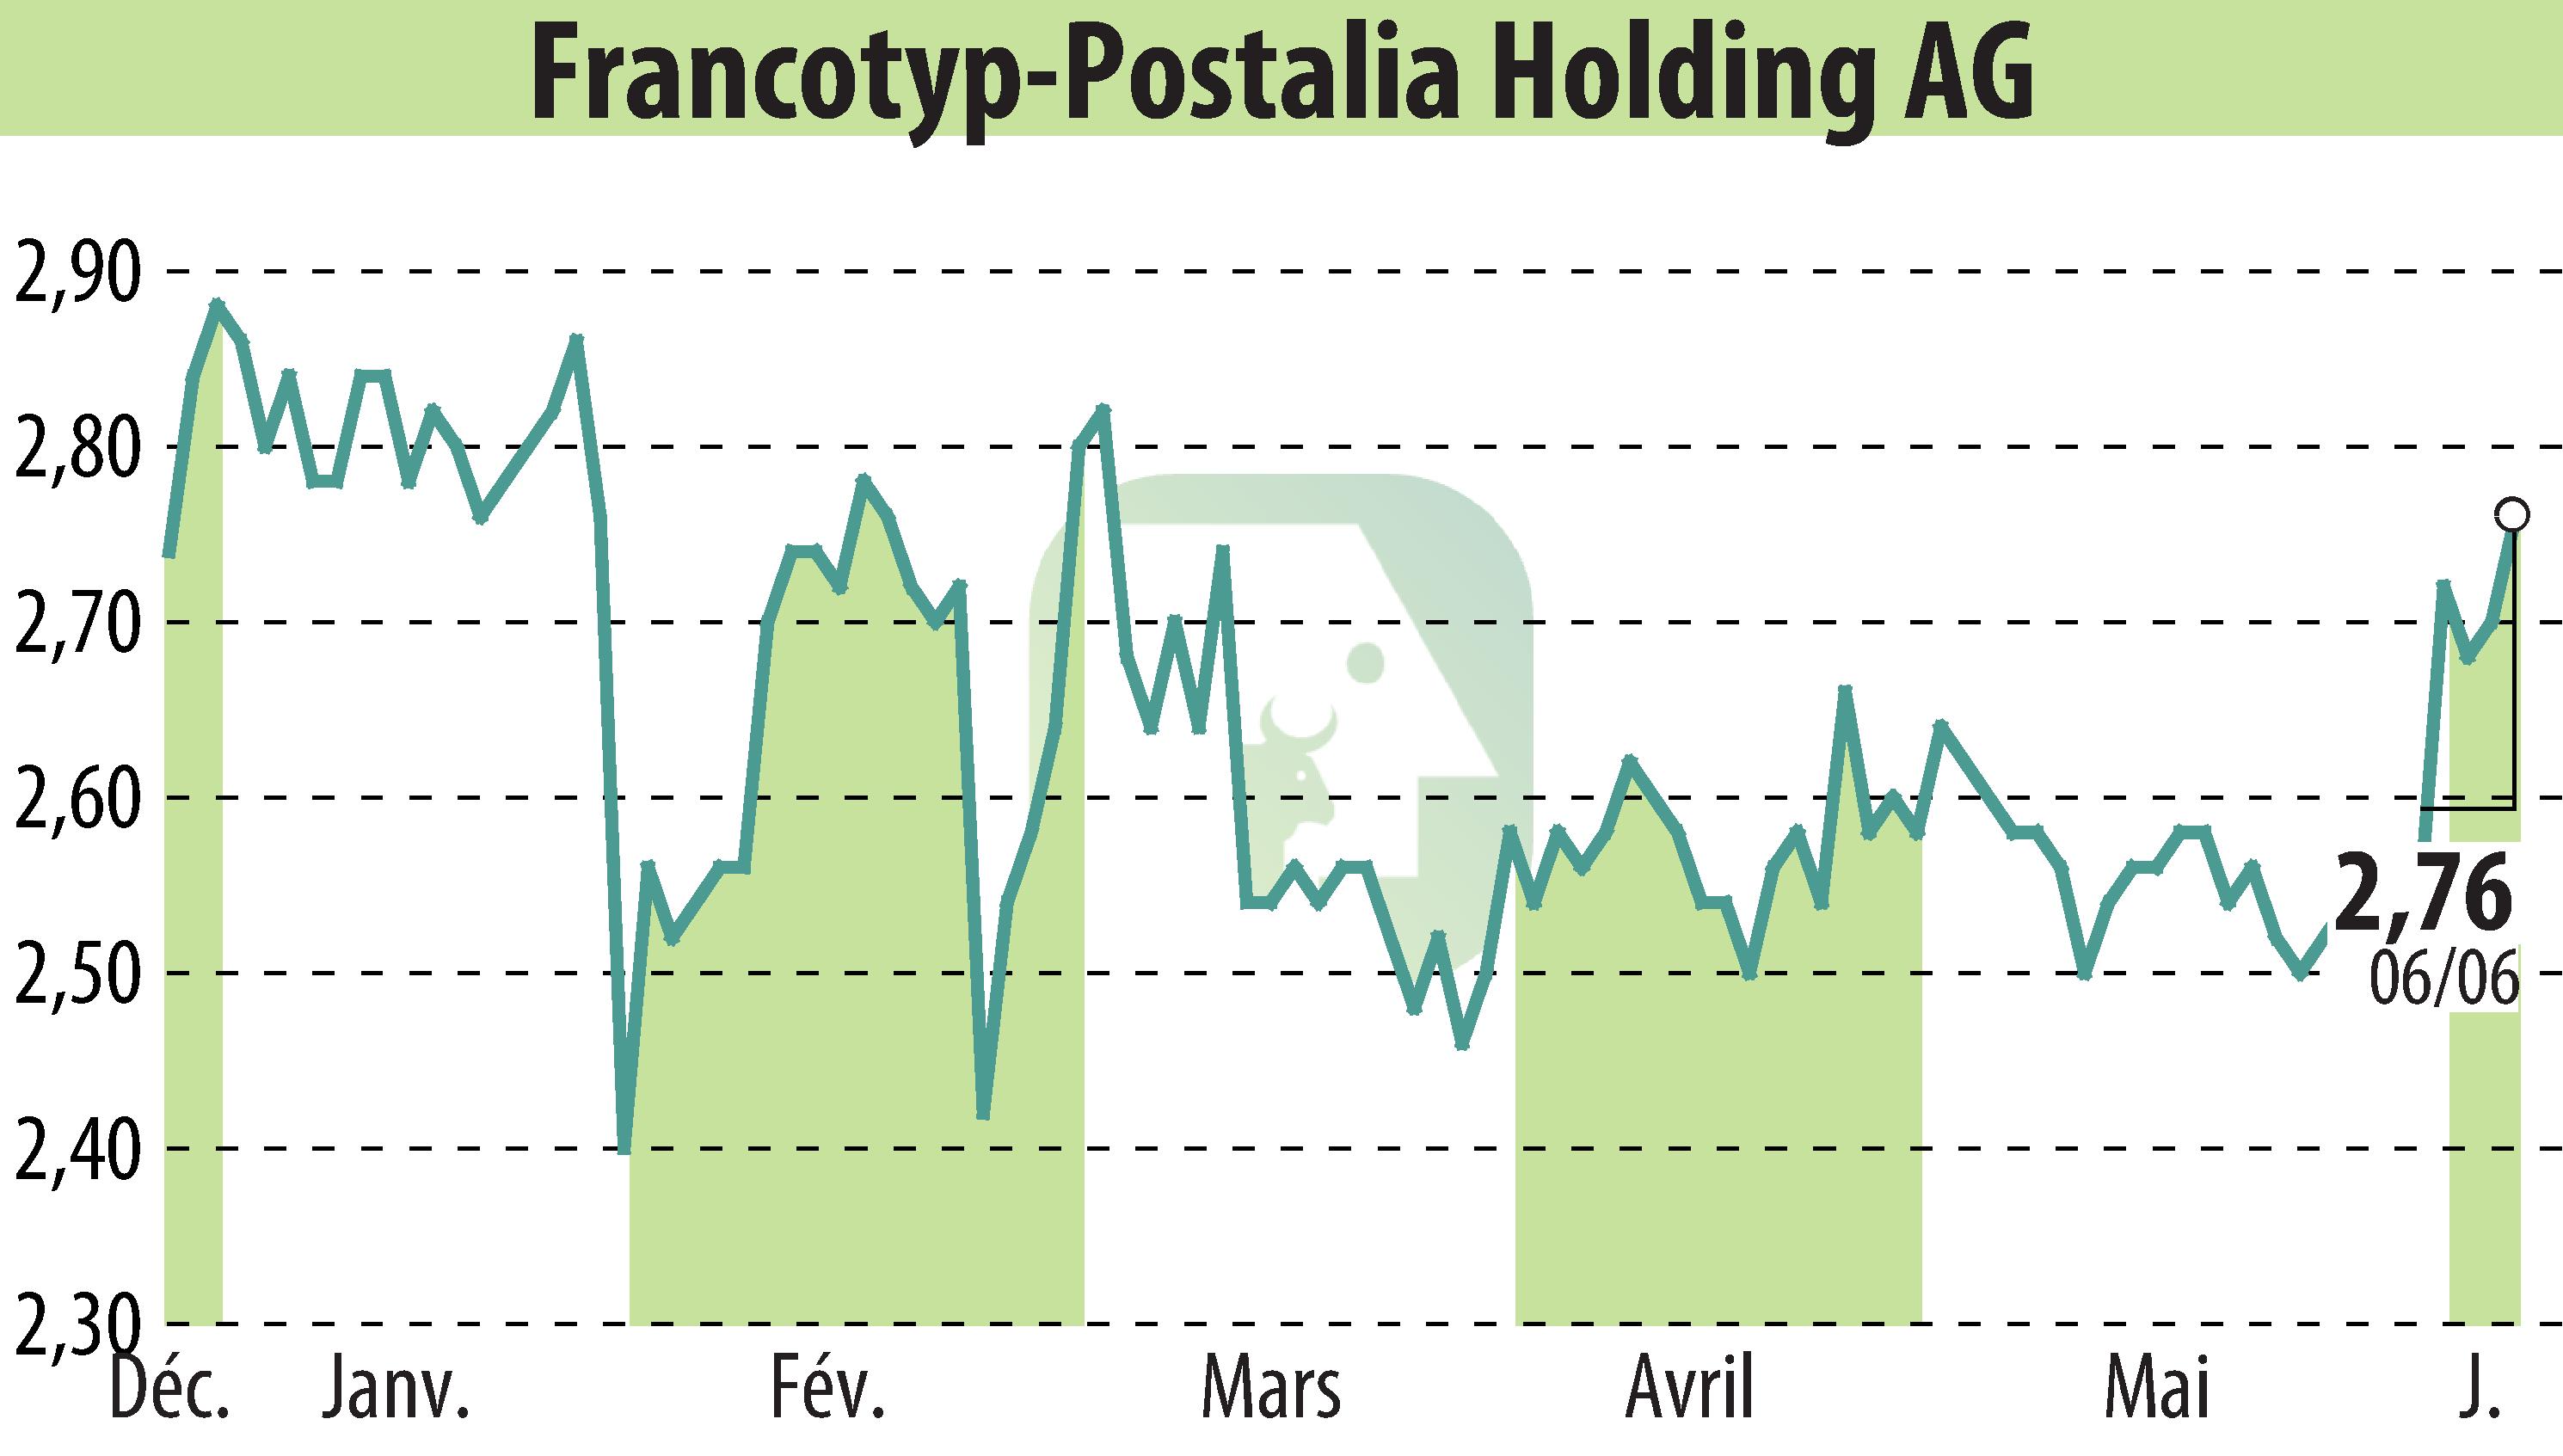 Graphique de l'évolution du cours de l'action Francotyp-Postalia Holding AG (EBR:FPH).